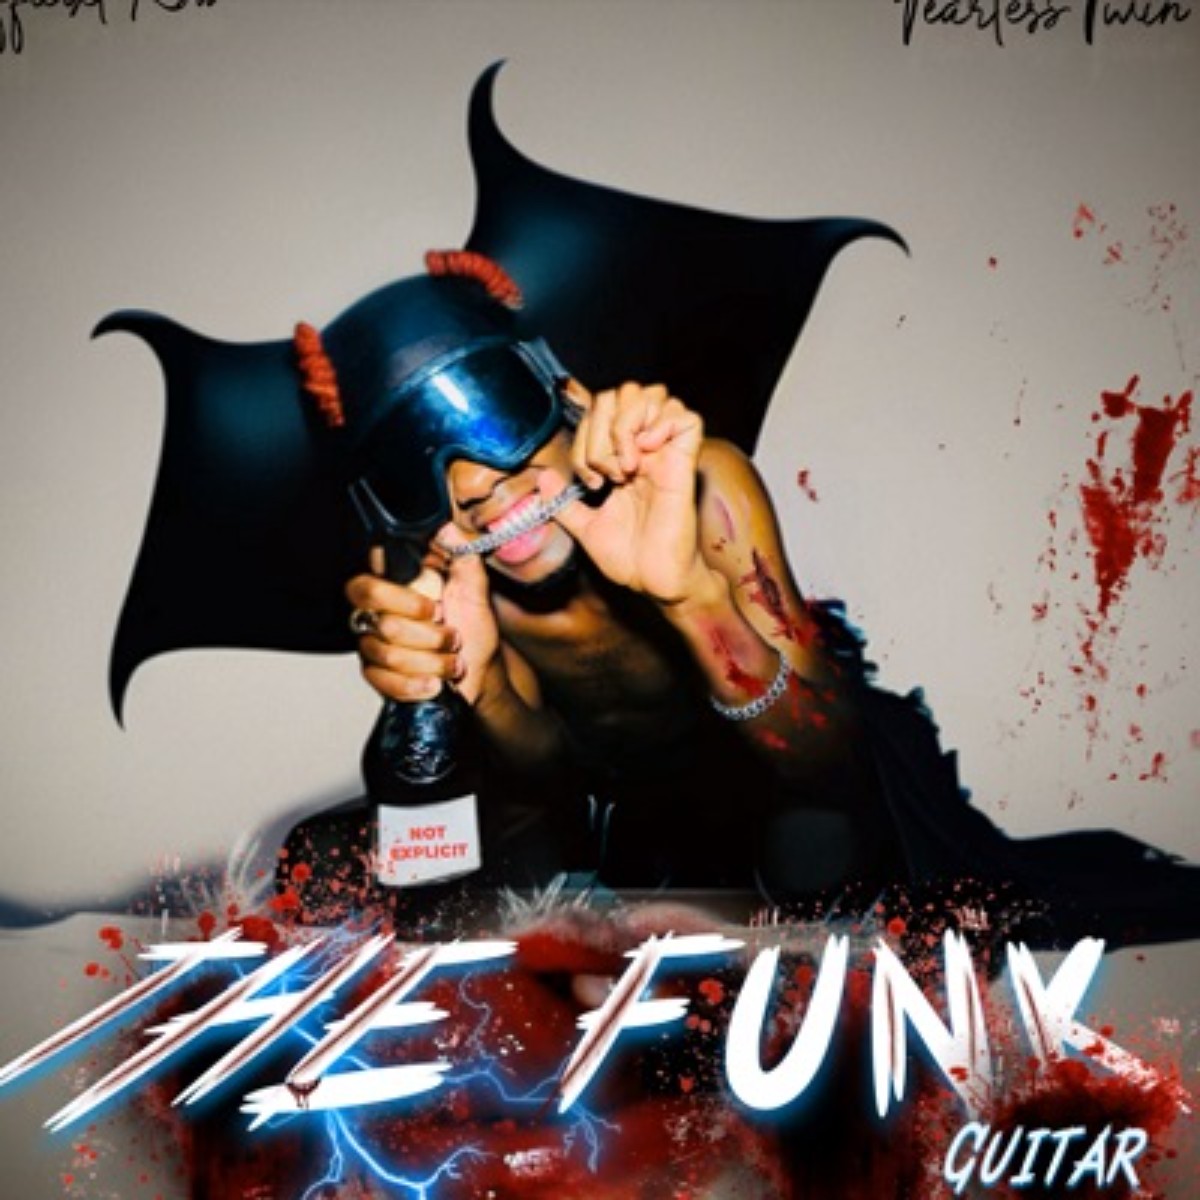 Officixl RSA The Funk Guitar Mp3 Download Hiphopza